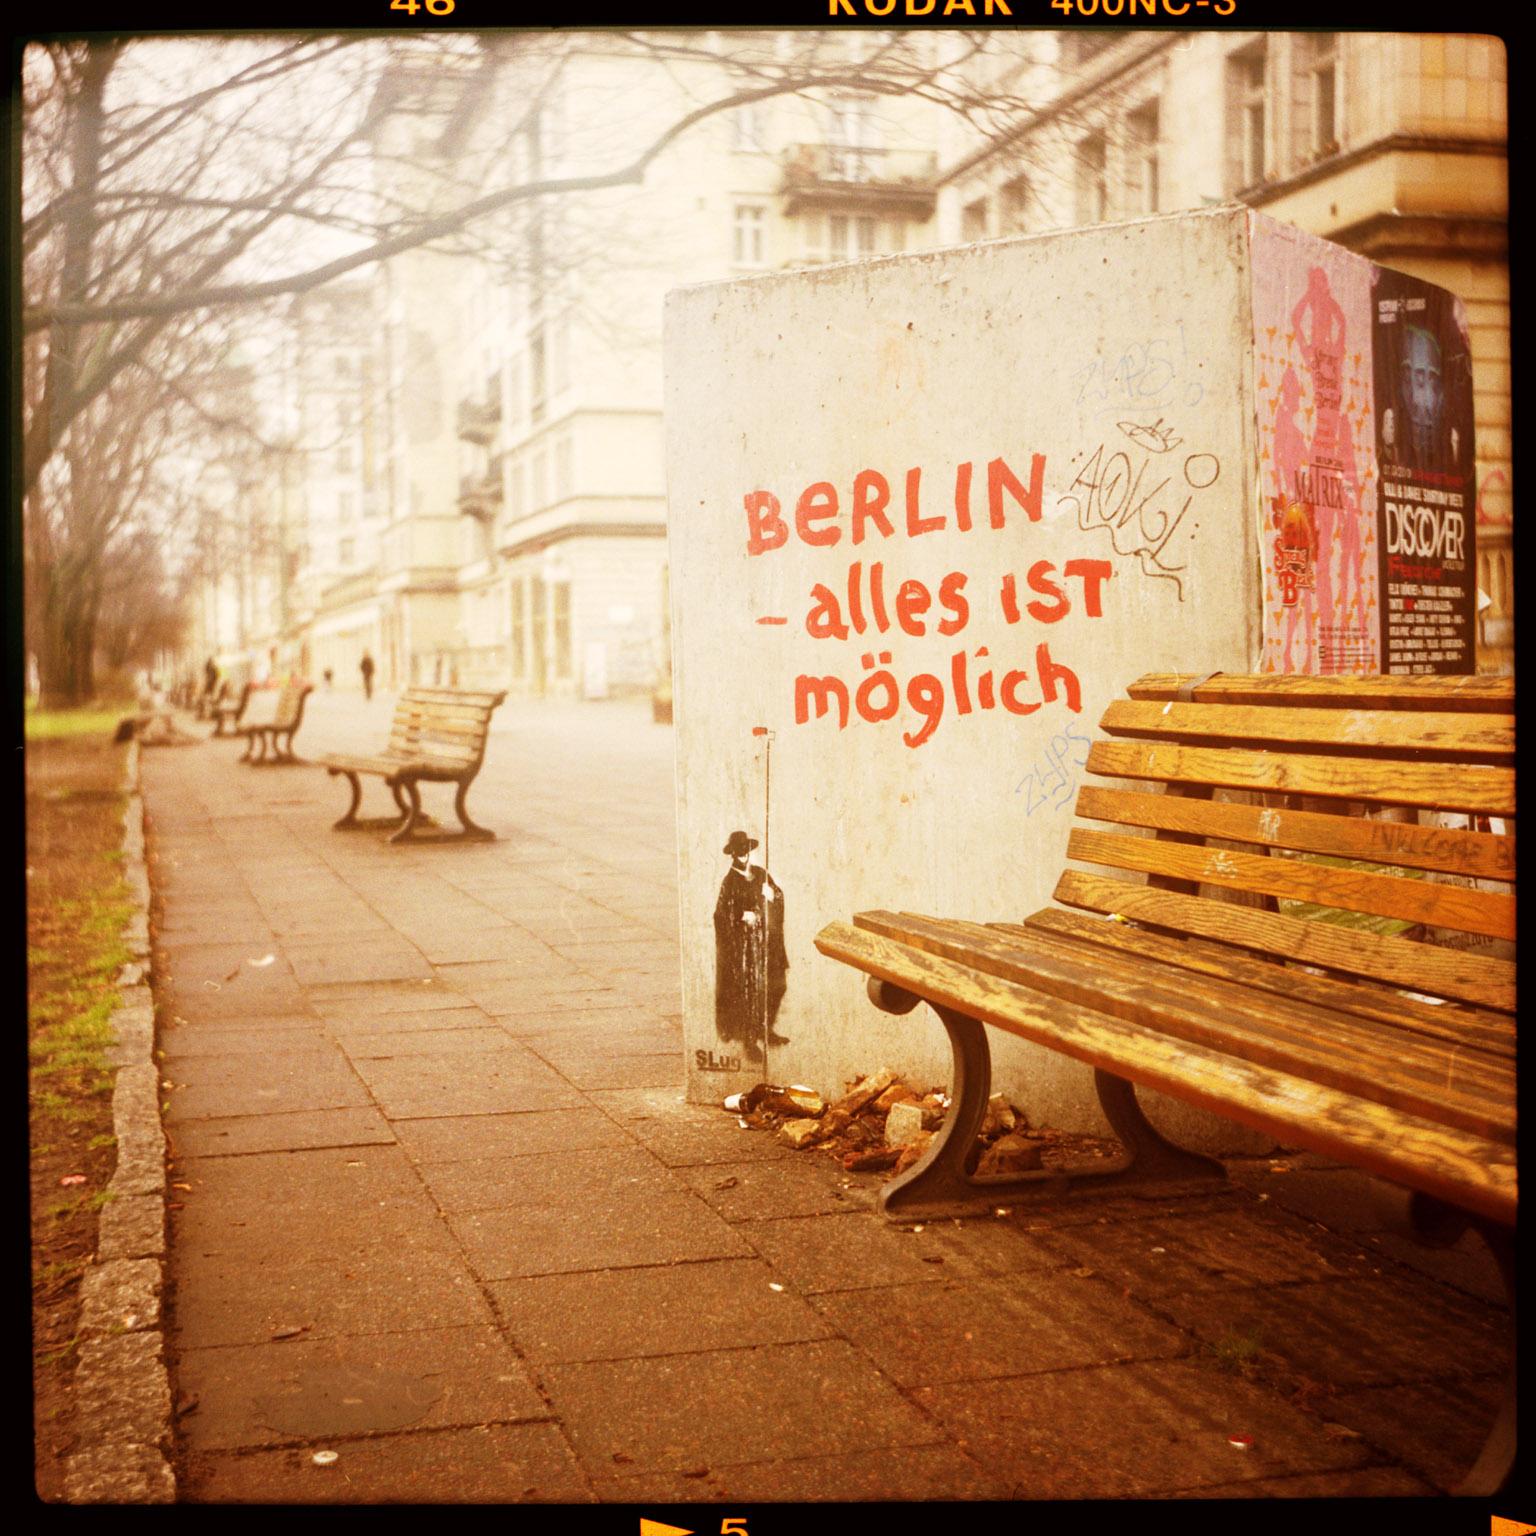 Landscape Photograph Florian Reischauer - a Piece of Berlin - alles ist möglich - Pieces of Berlin - Graffiti, Streetart